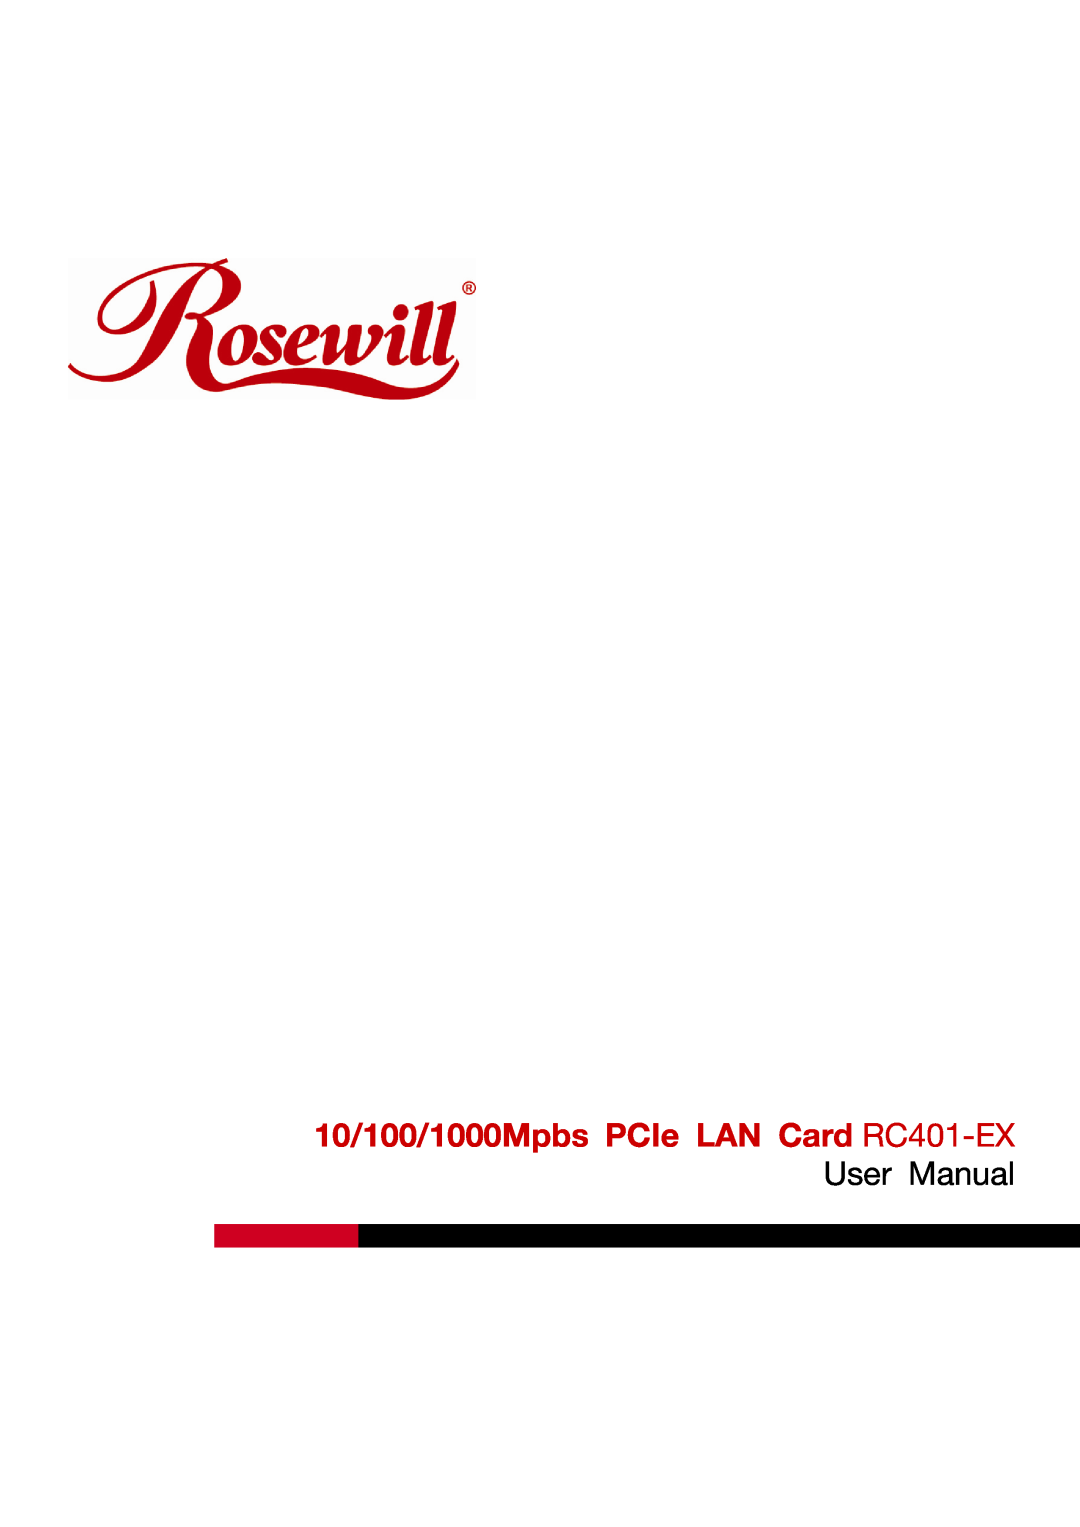 Rosewill user manual 10/100/1000Mpbs PCIe LAN Card RC401-EX User Manual 